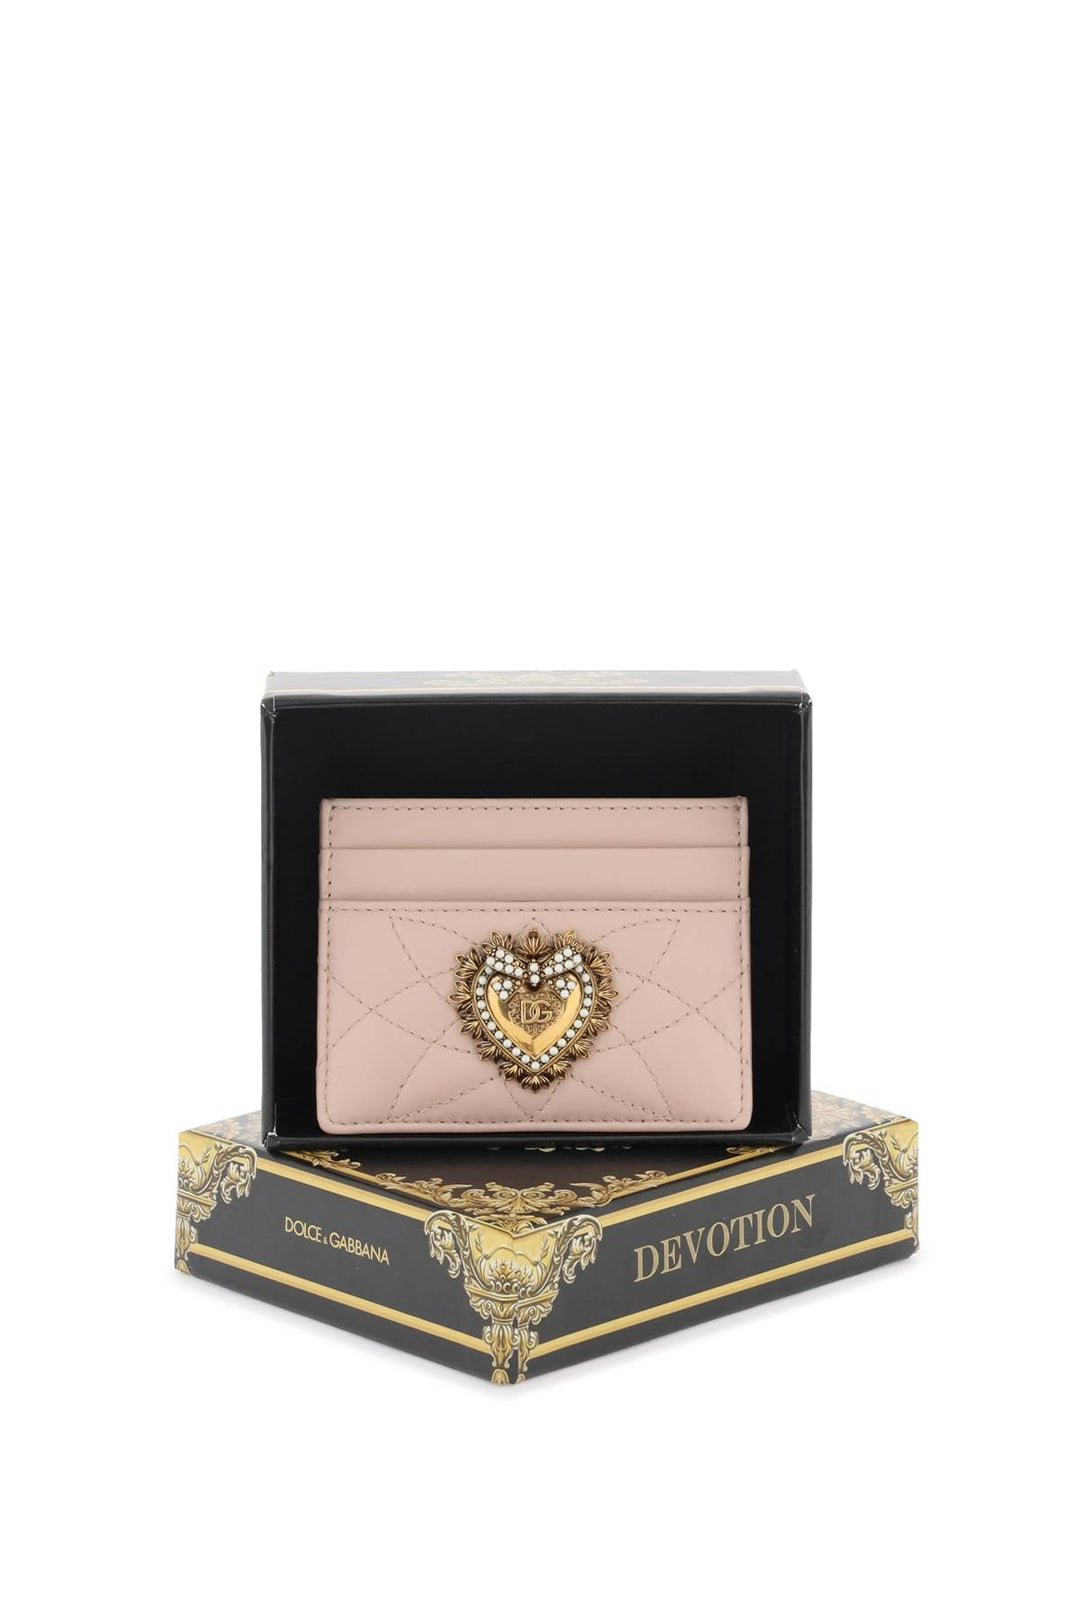 Porta Carte Di Credito 'Devotion' - Dolce & Gabbana - Donna